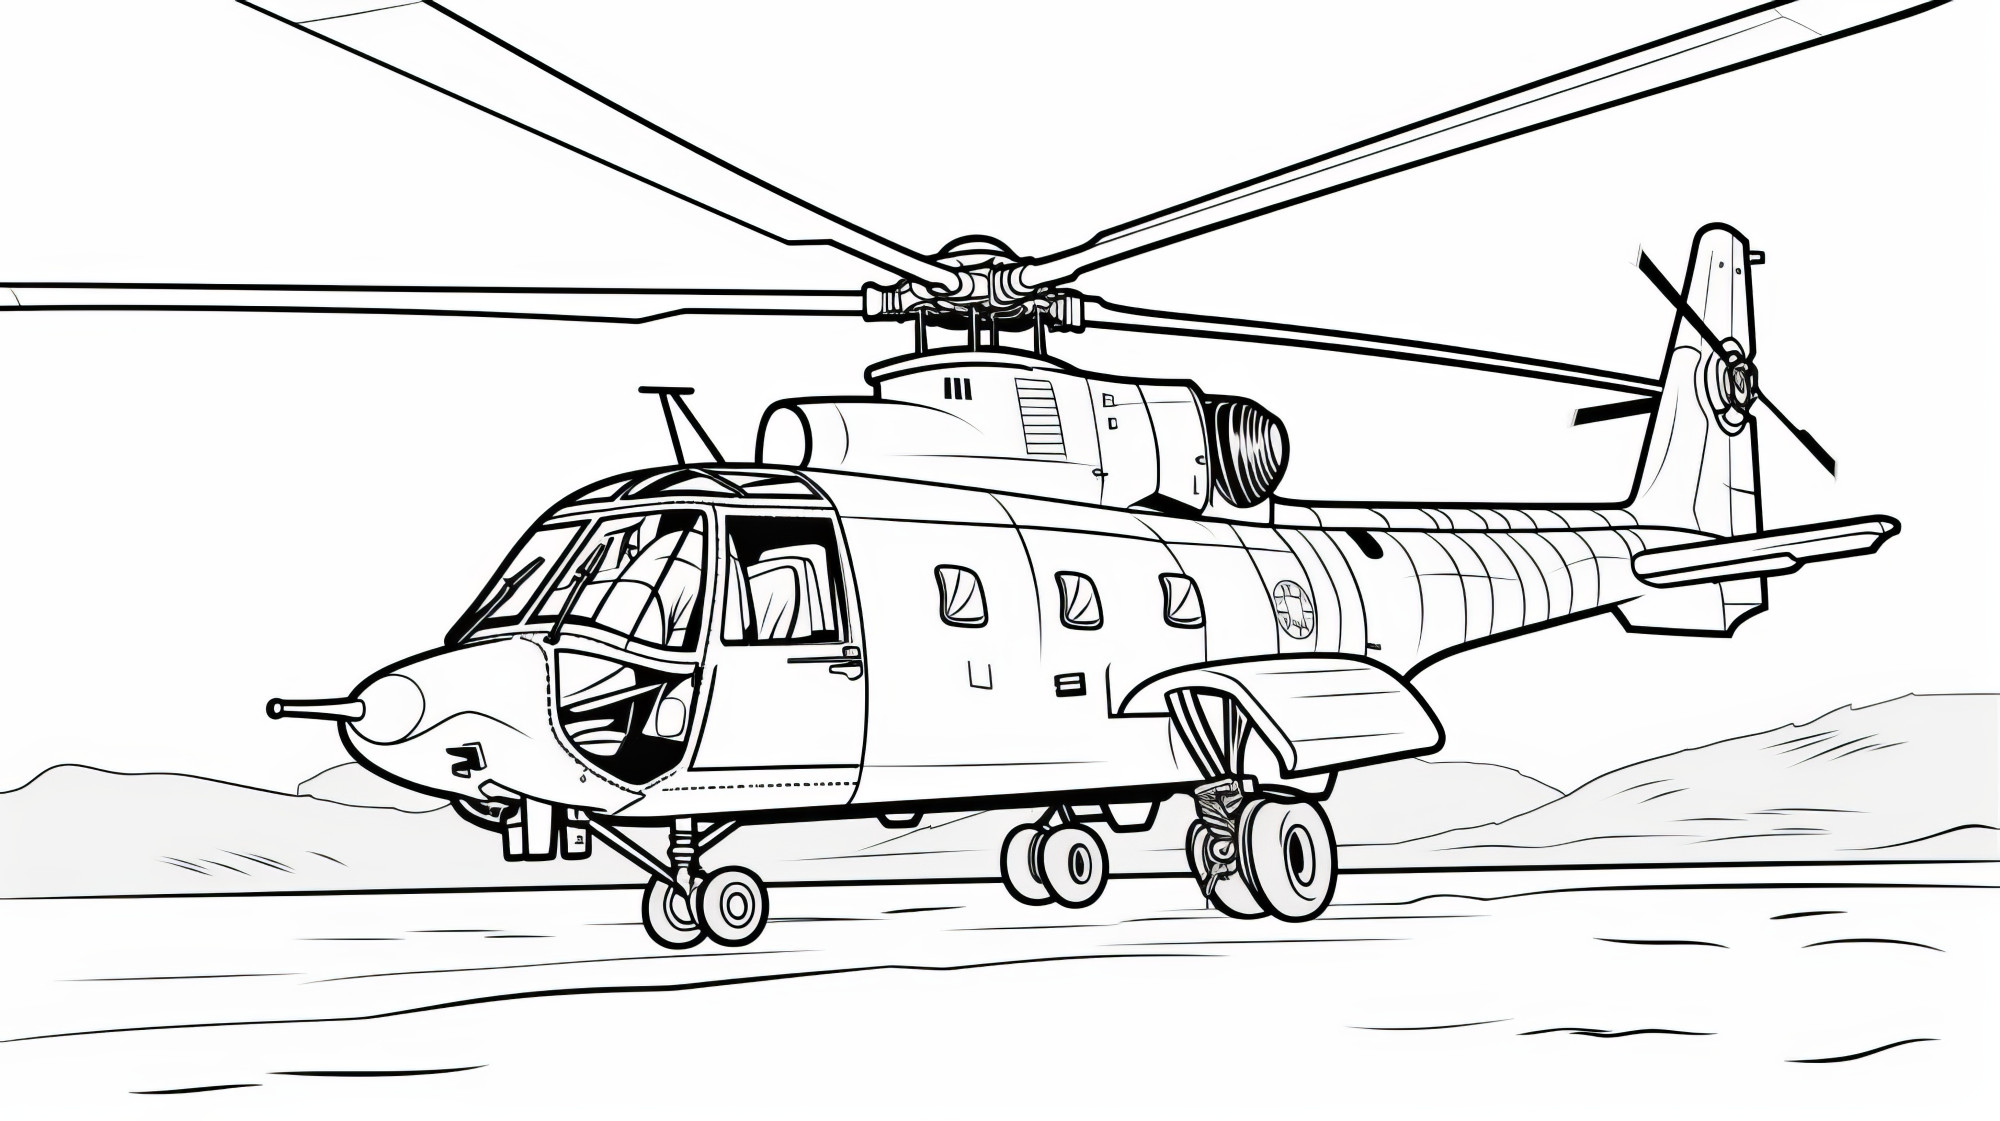 Раскраска для детей: вертолет «Сокол»